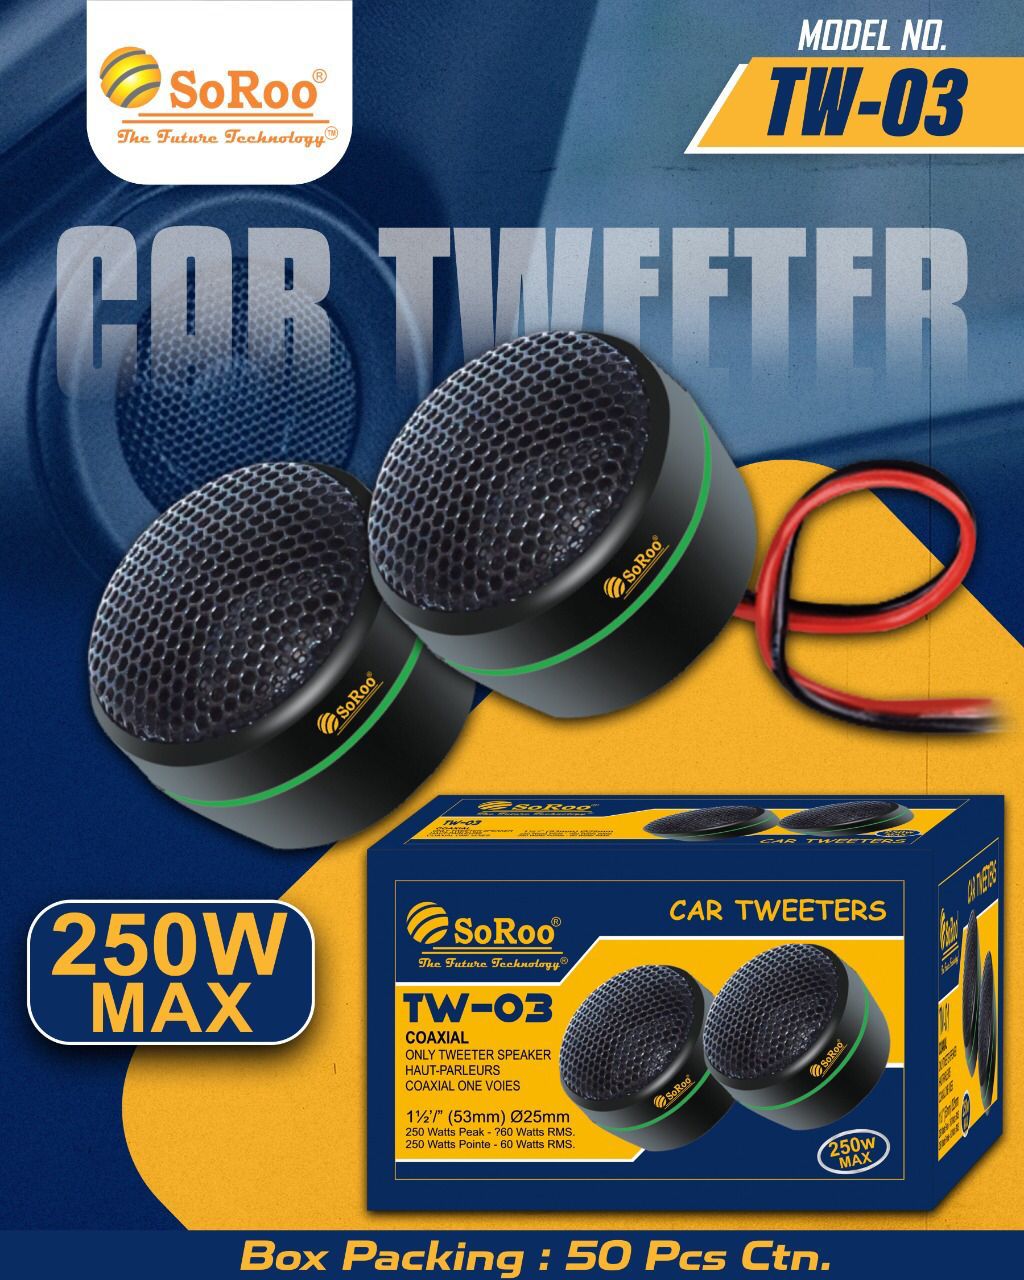 Soroo Car Tweeter TW-03